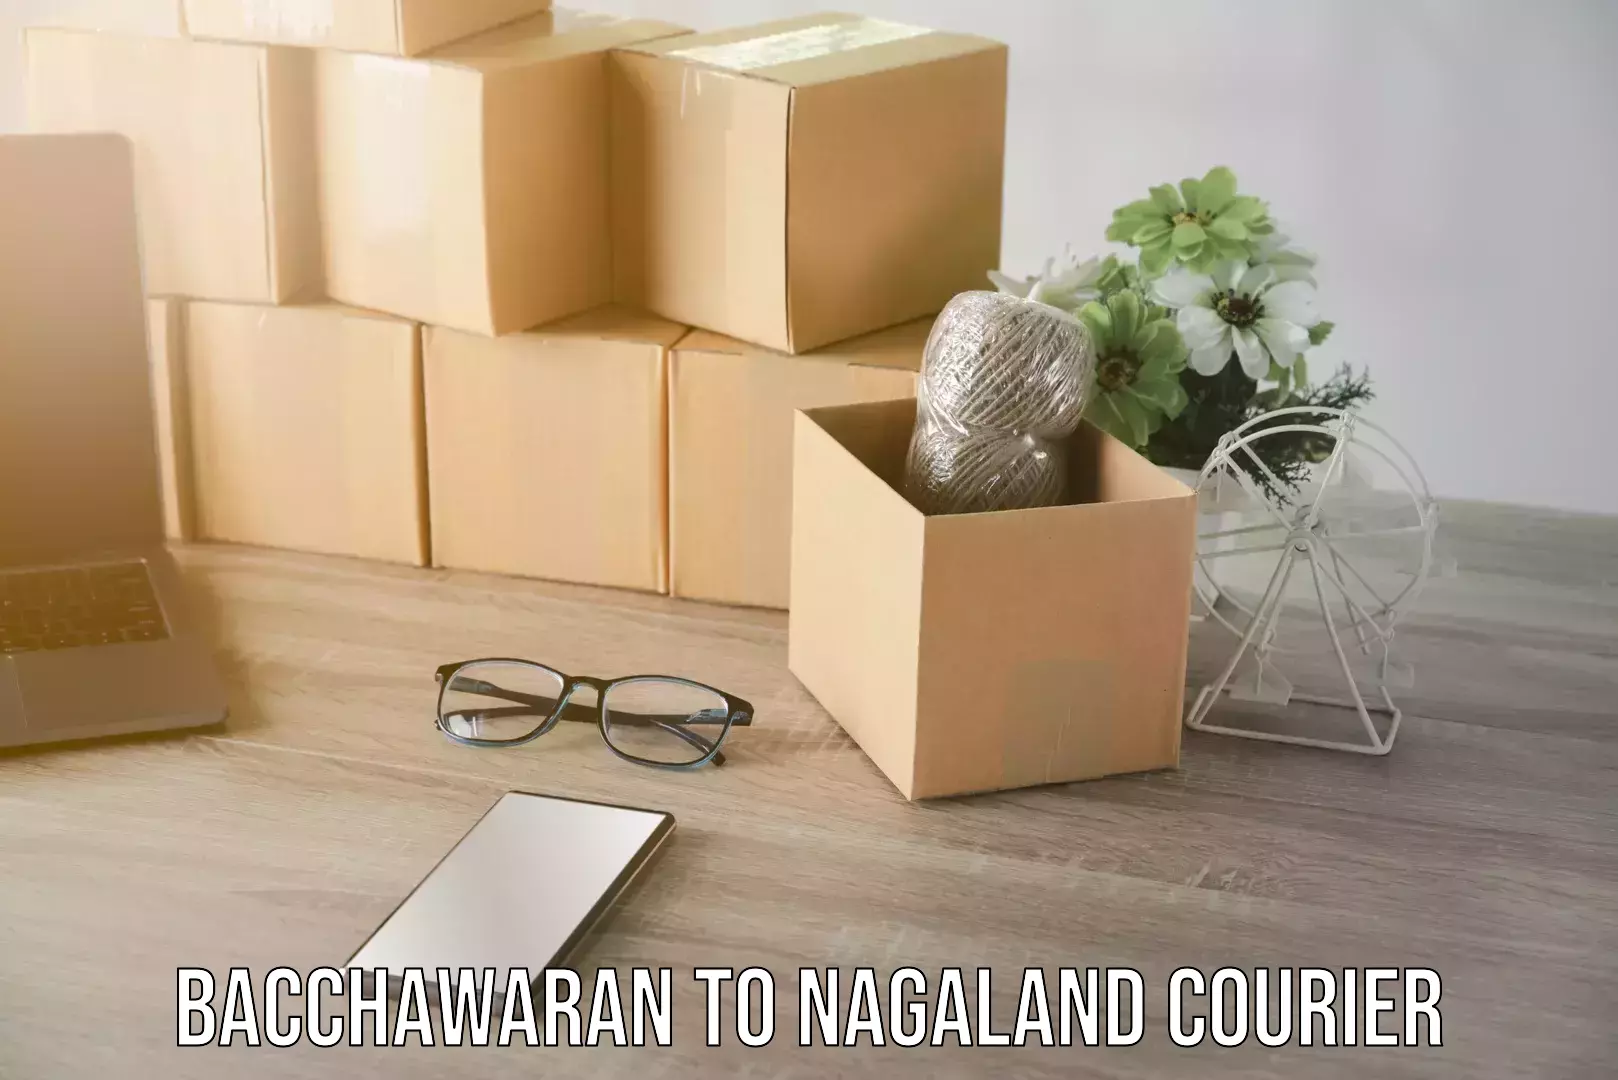 Supply chain efficiency Bacchawaran to Nagaland